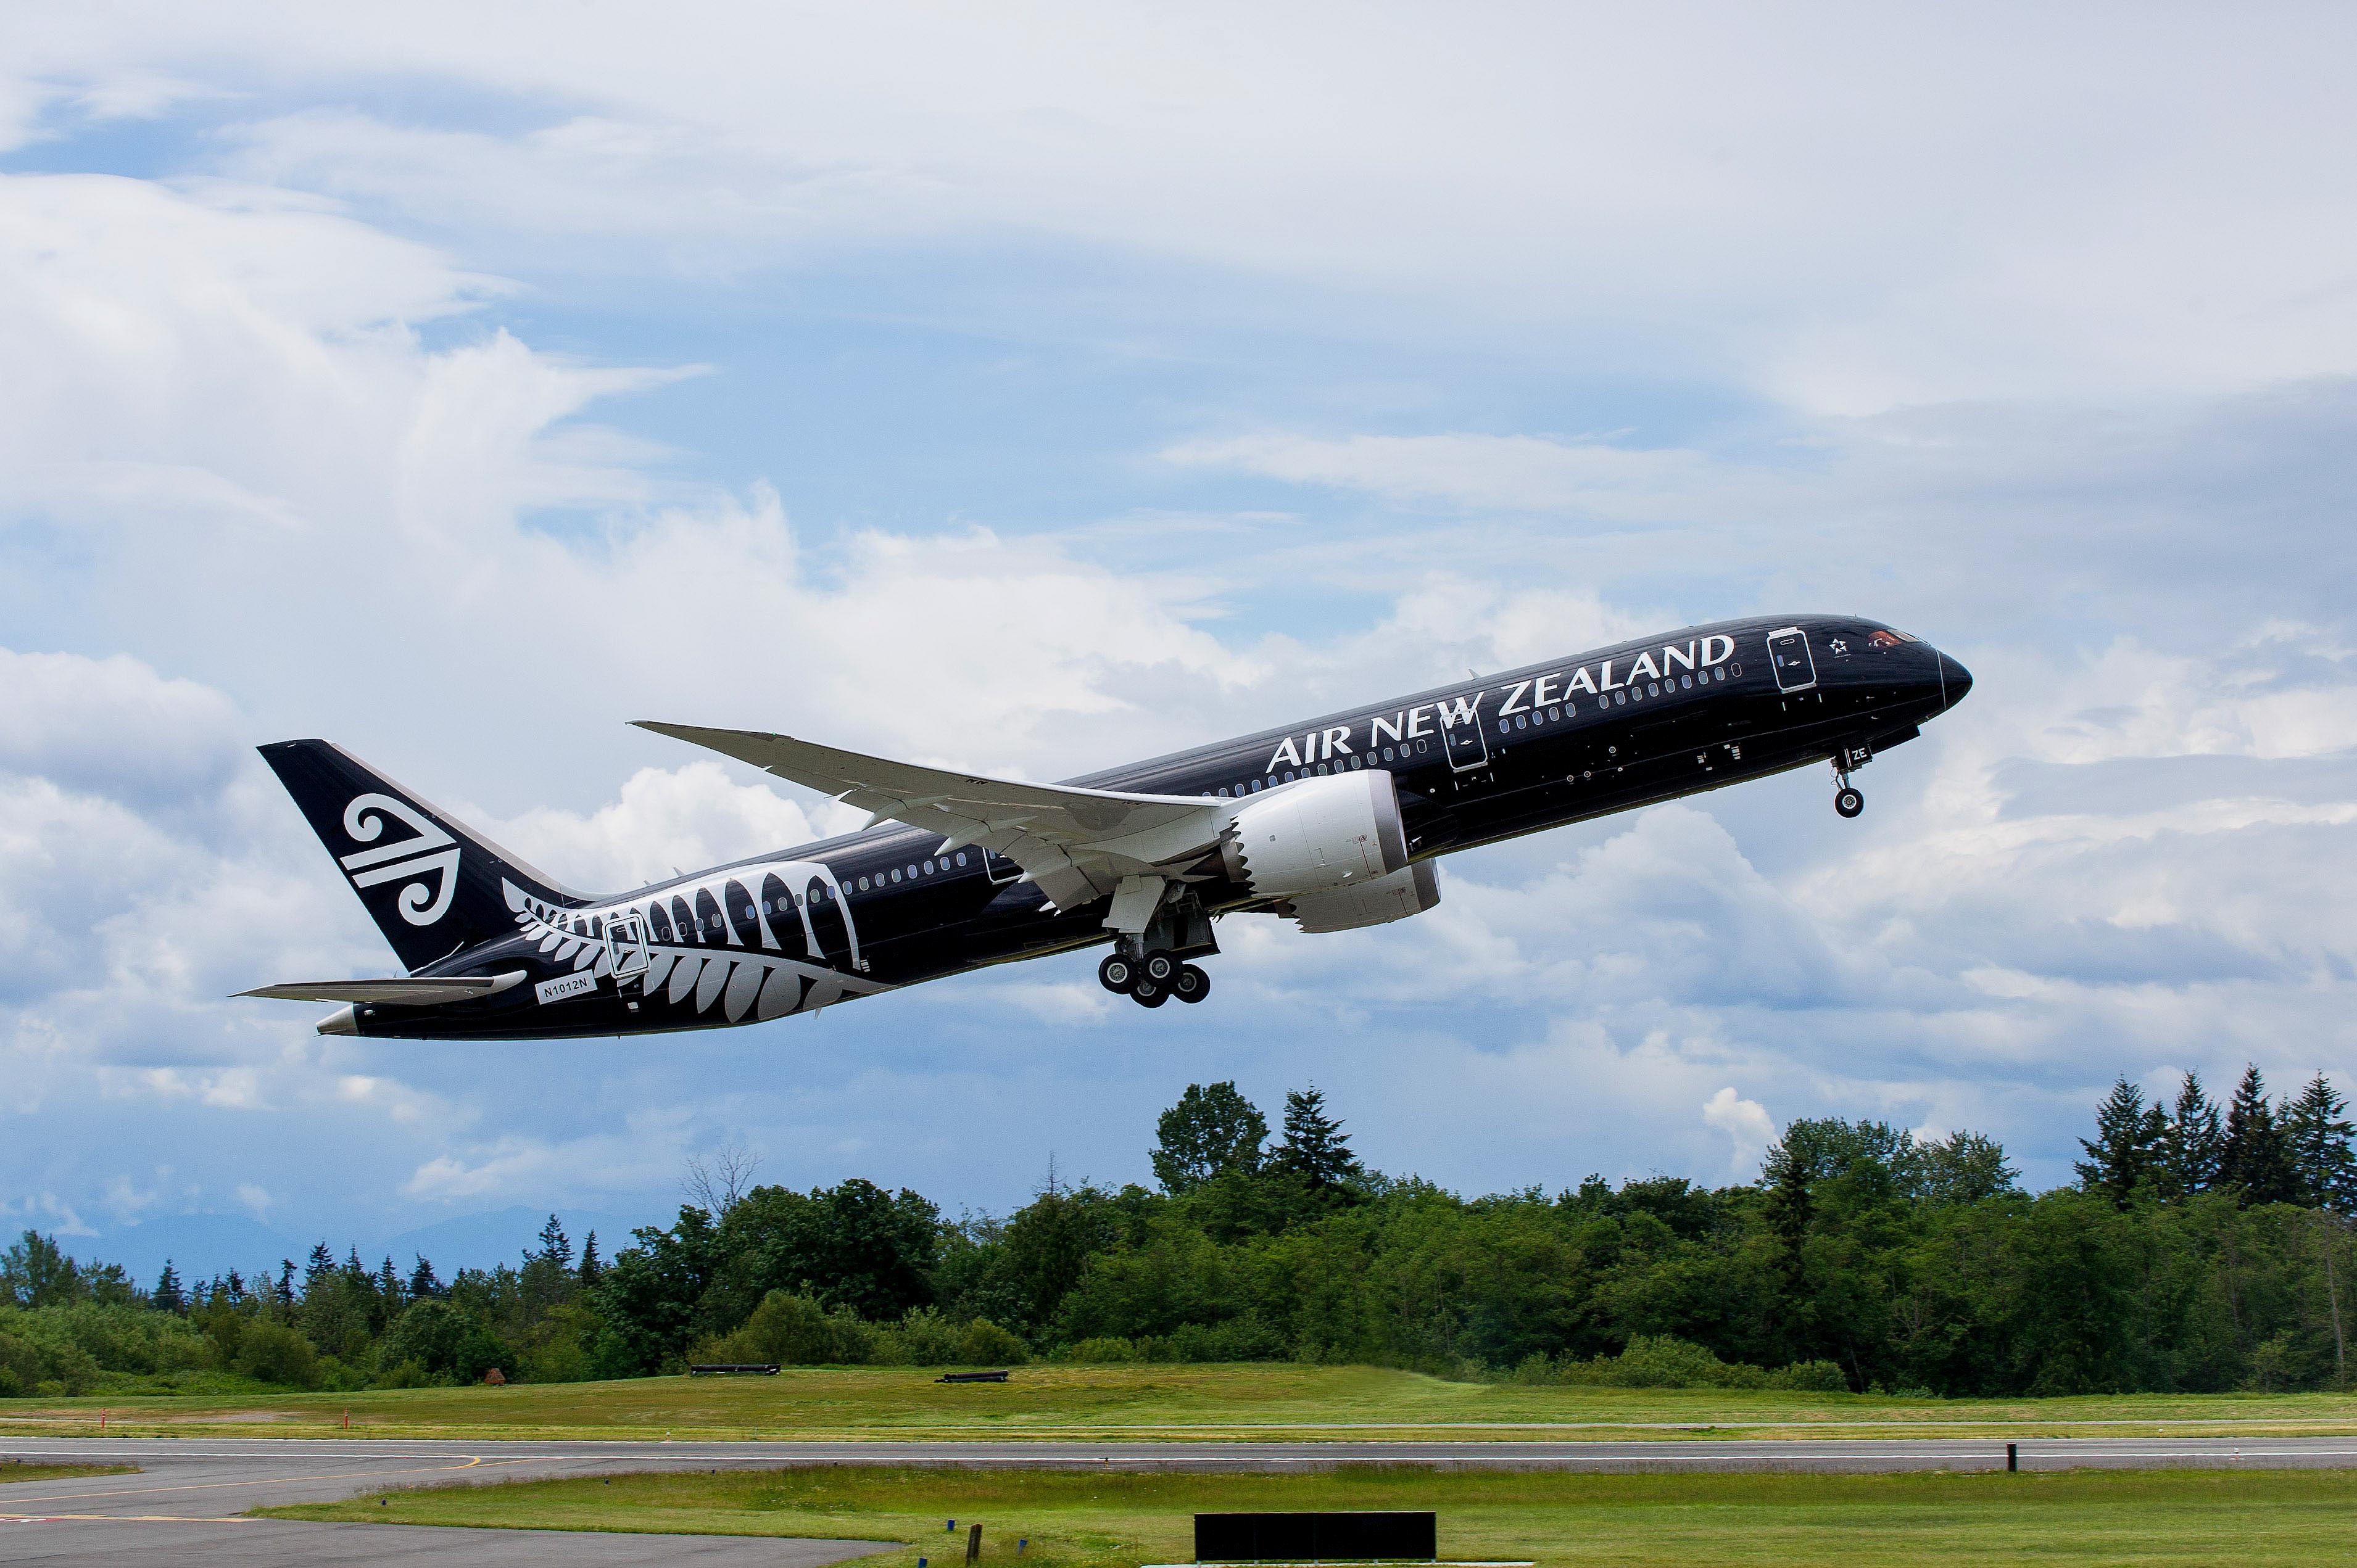 这架刚从起跑到提升的黑色飞机属于新西兰航空,黑色飞机是新西兰航空